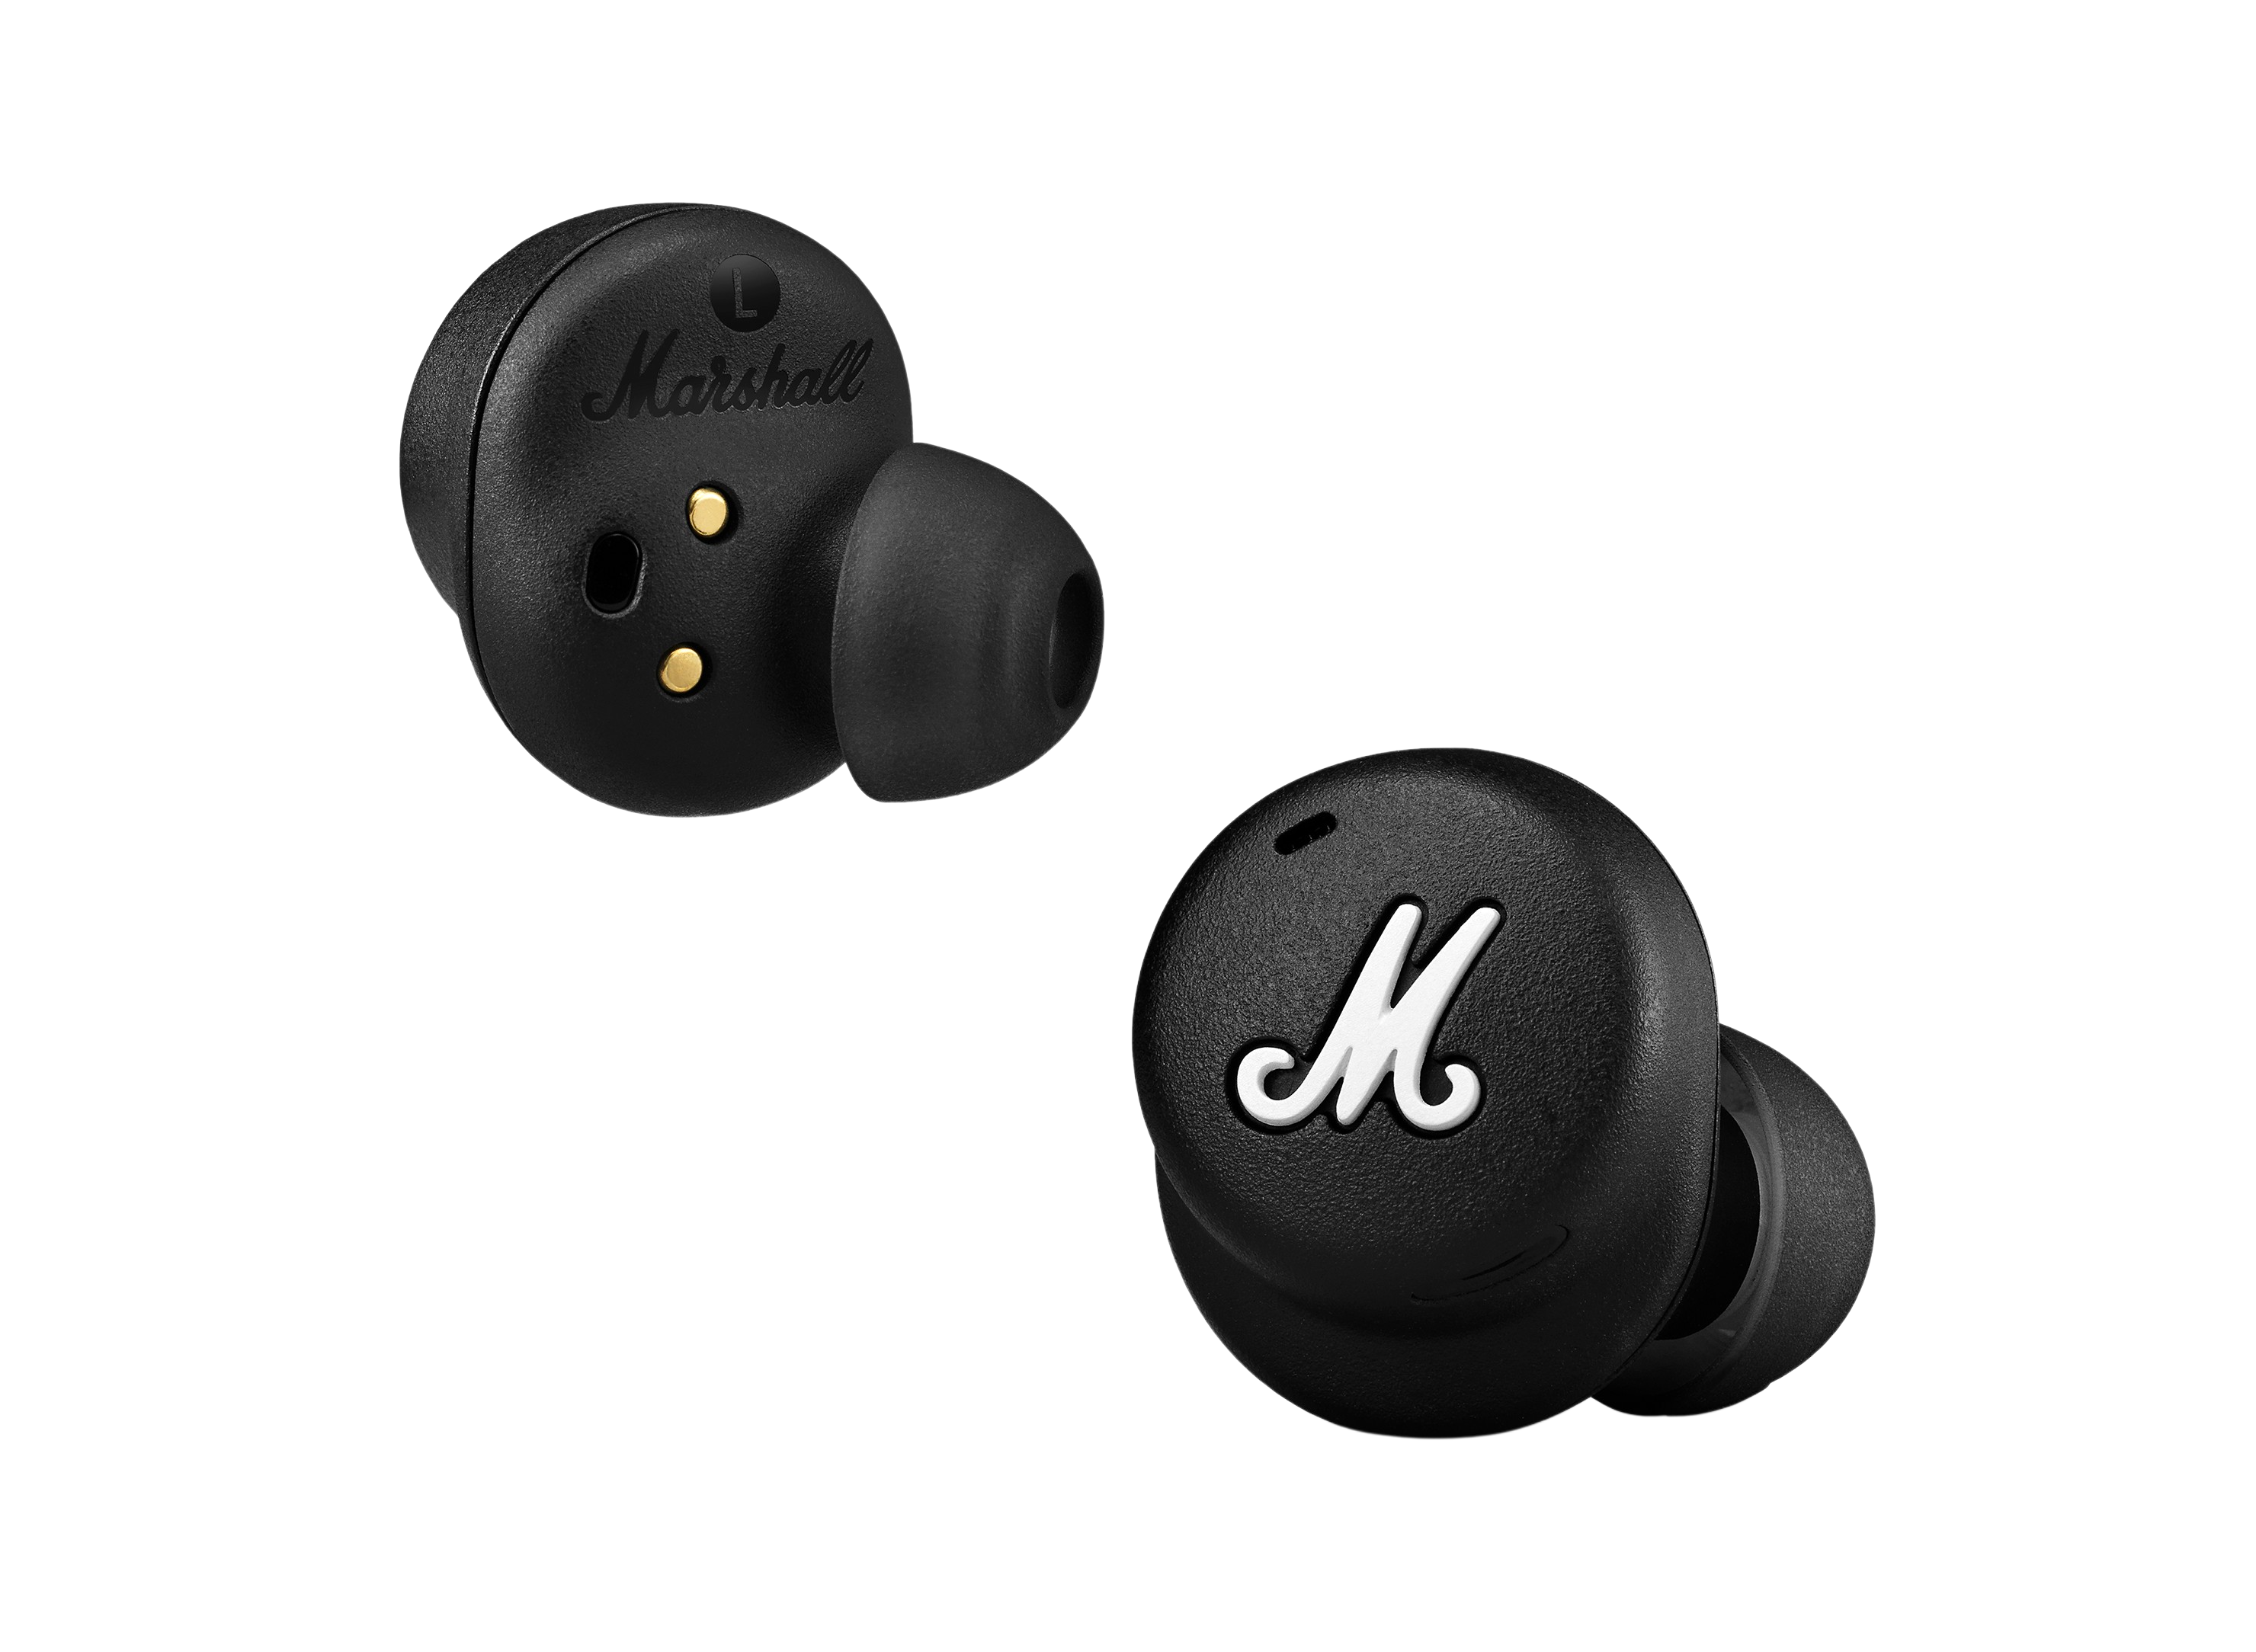 Auriculares de botón  Marshall Mode, Micrófono, Negro